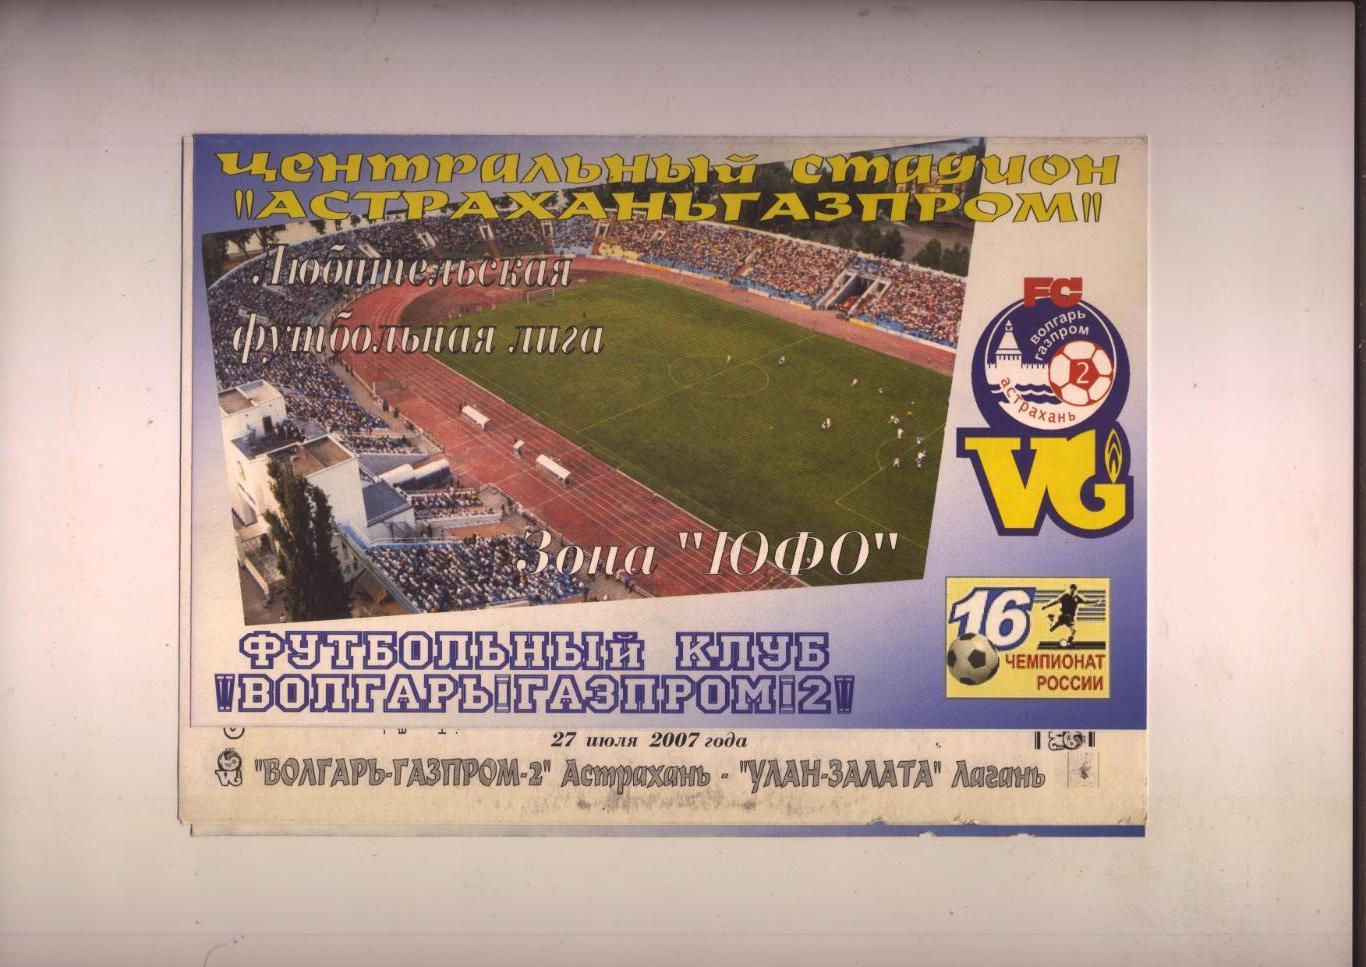 Чемпионат РФ Волгарь-Газпром-2 Астрахань - Улан-Залата Лагань 27 07 2007